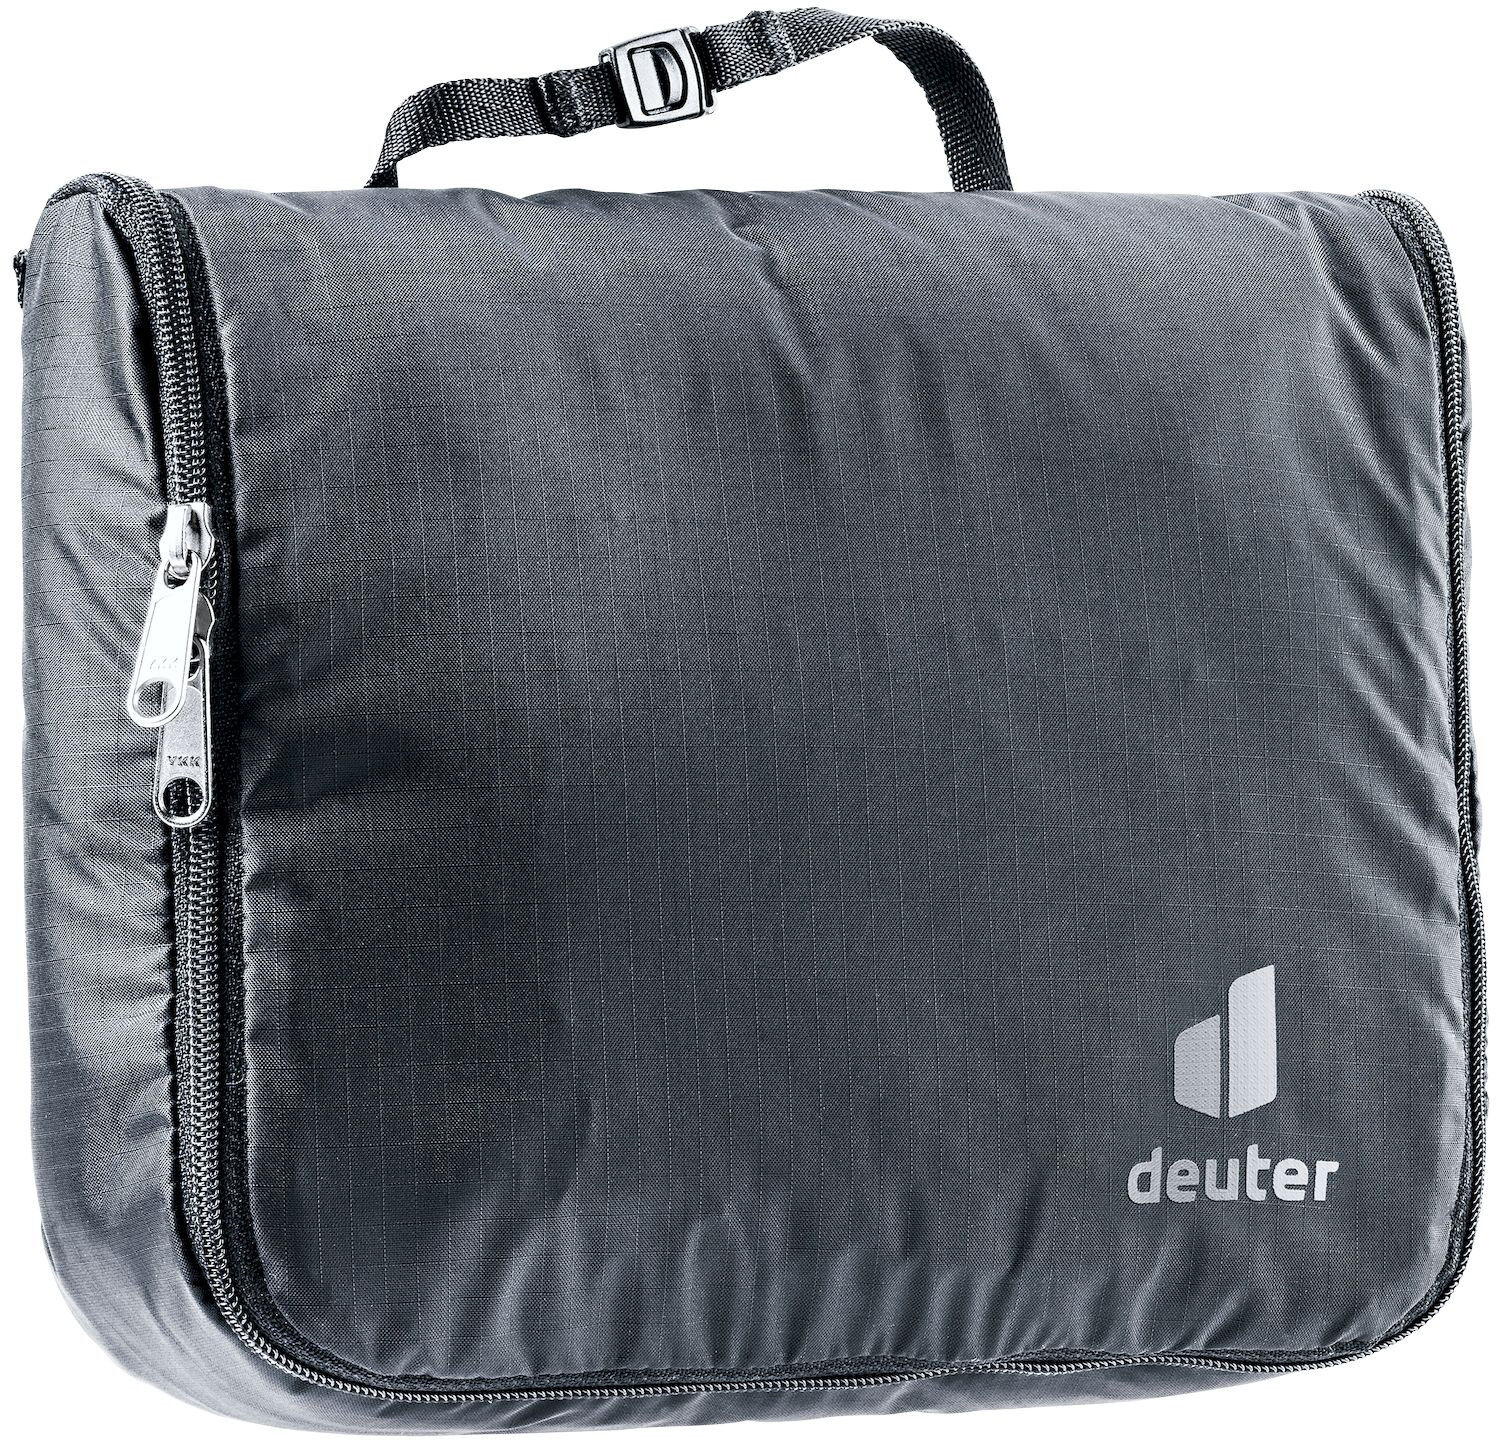 Deuter Wash Center Lite I - Wash bag